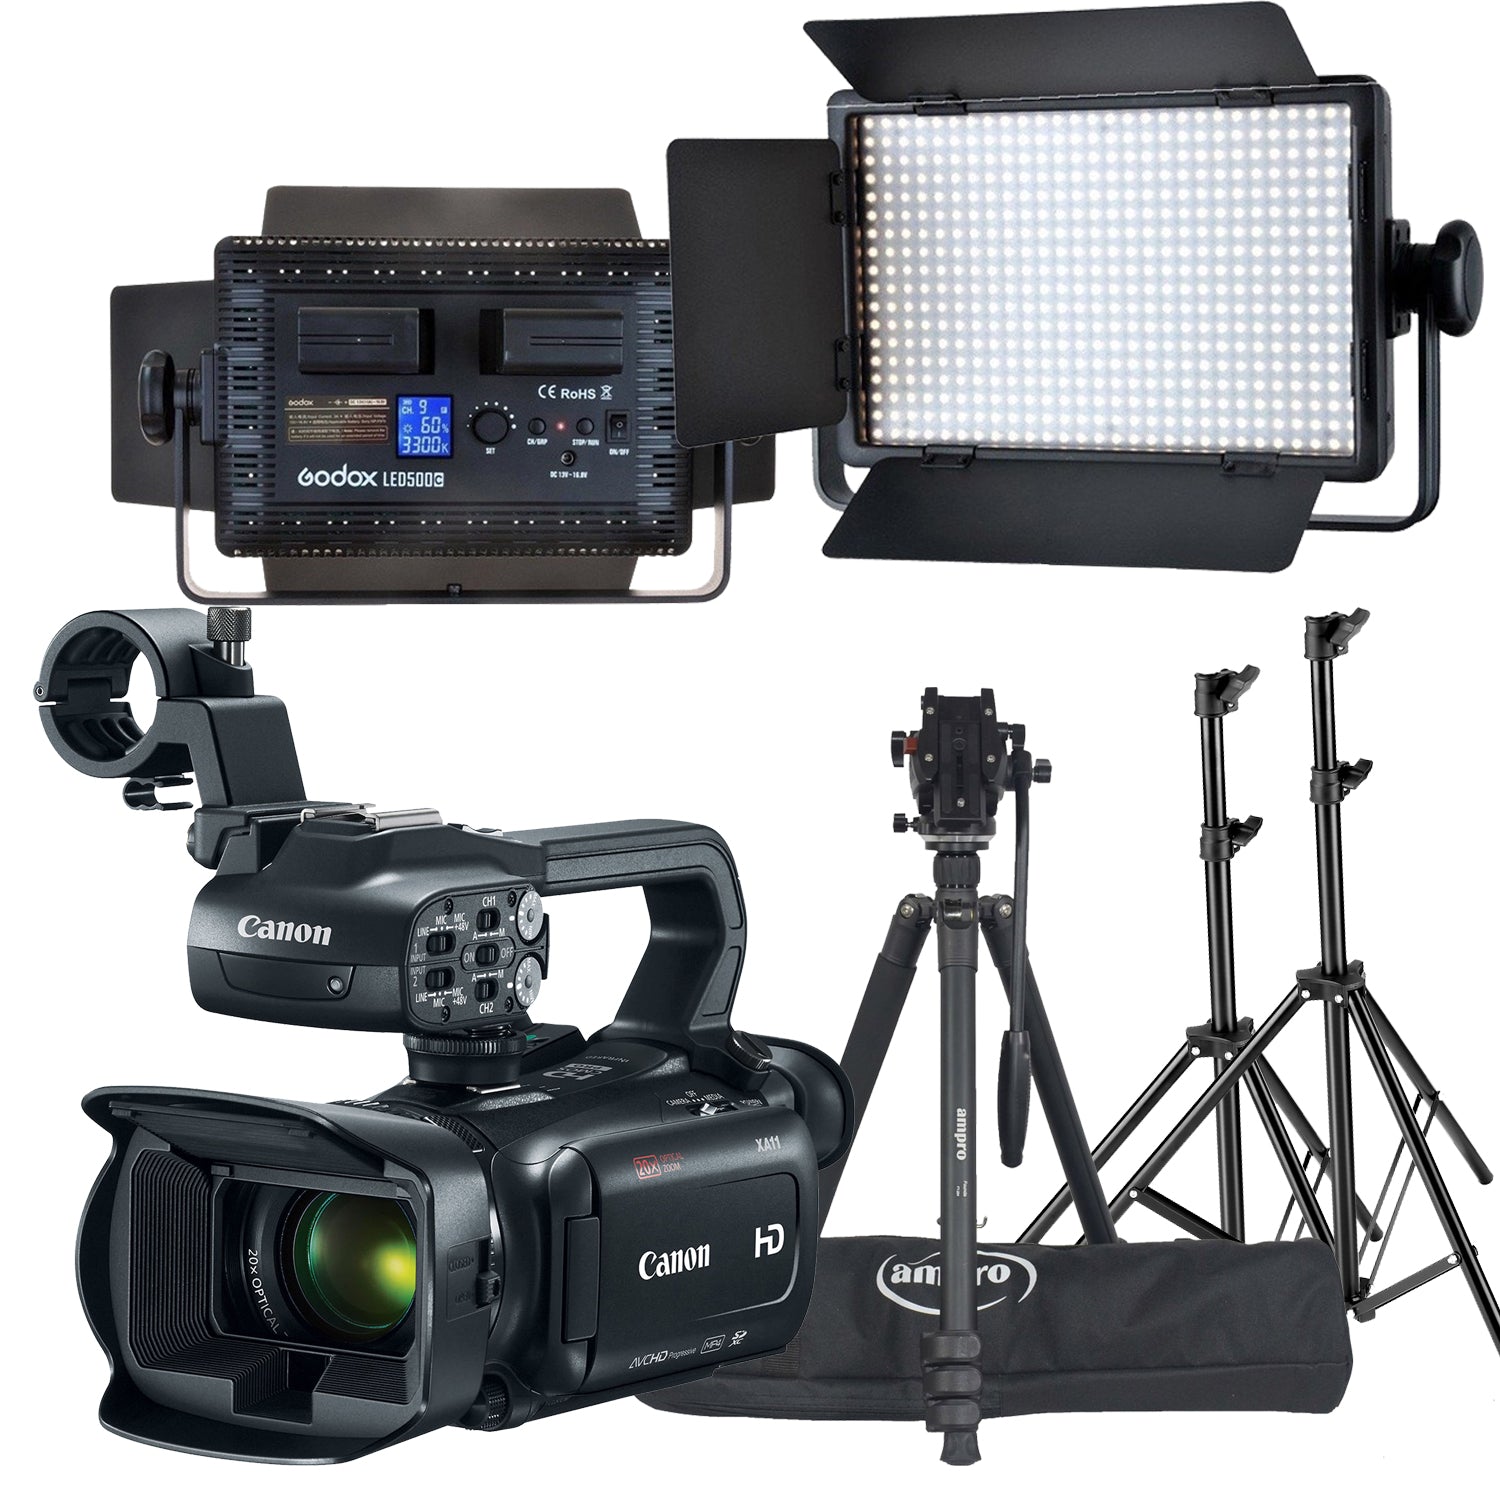 Rental VIDEO COMBO KIT - Canon XA11 HD CAMCORDER + TRIPOD + Godox LED 500 Light Kit (2X 500 LED lights) Rental - R1230 P/Day Camera tek